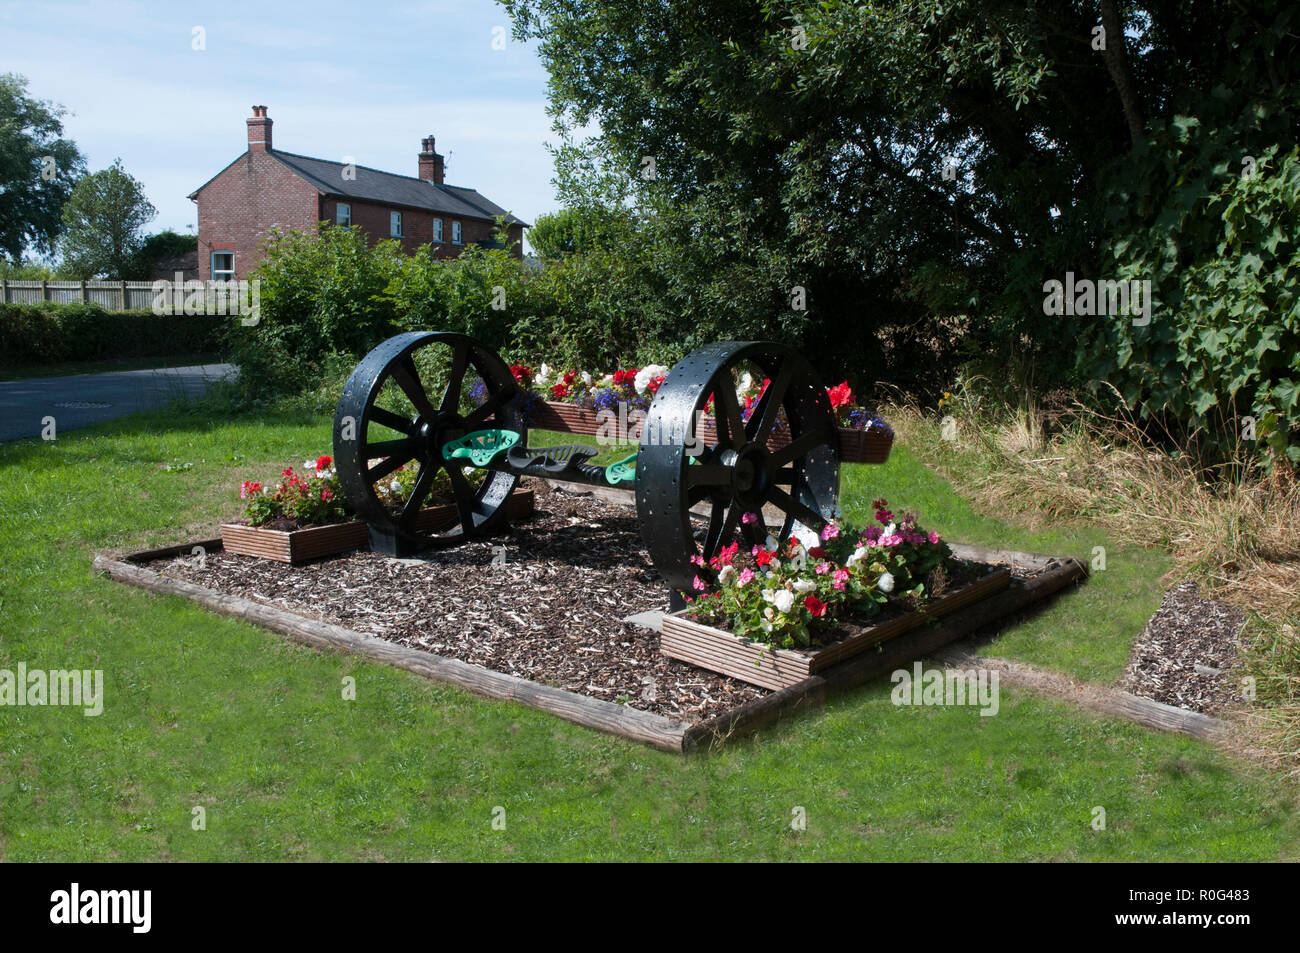 Blume am Straßenrand Anzeige von Begonien und Geranien mit einem landwirtschaftlichen Gerät als Mittelstück. stalmine Dorf BlackpooL Lancashire England Großbritannien Stockfoto